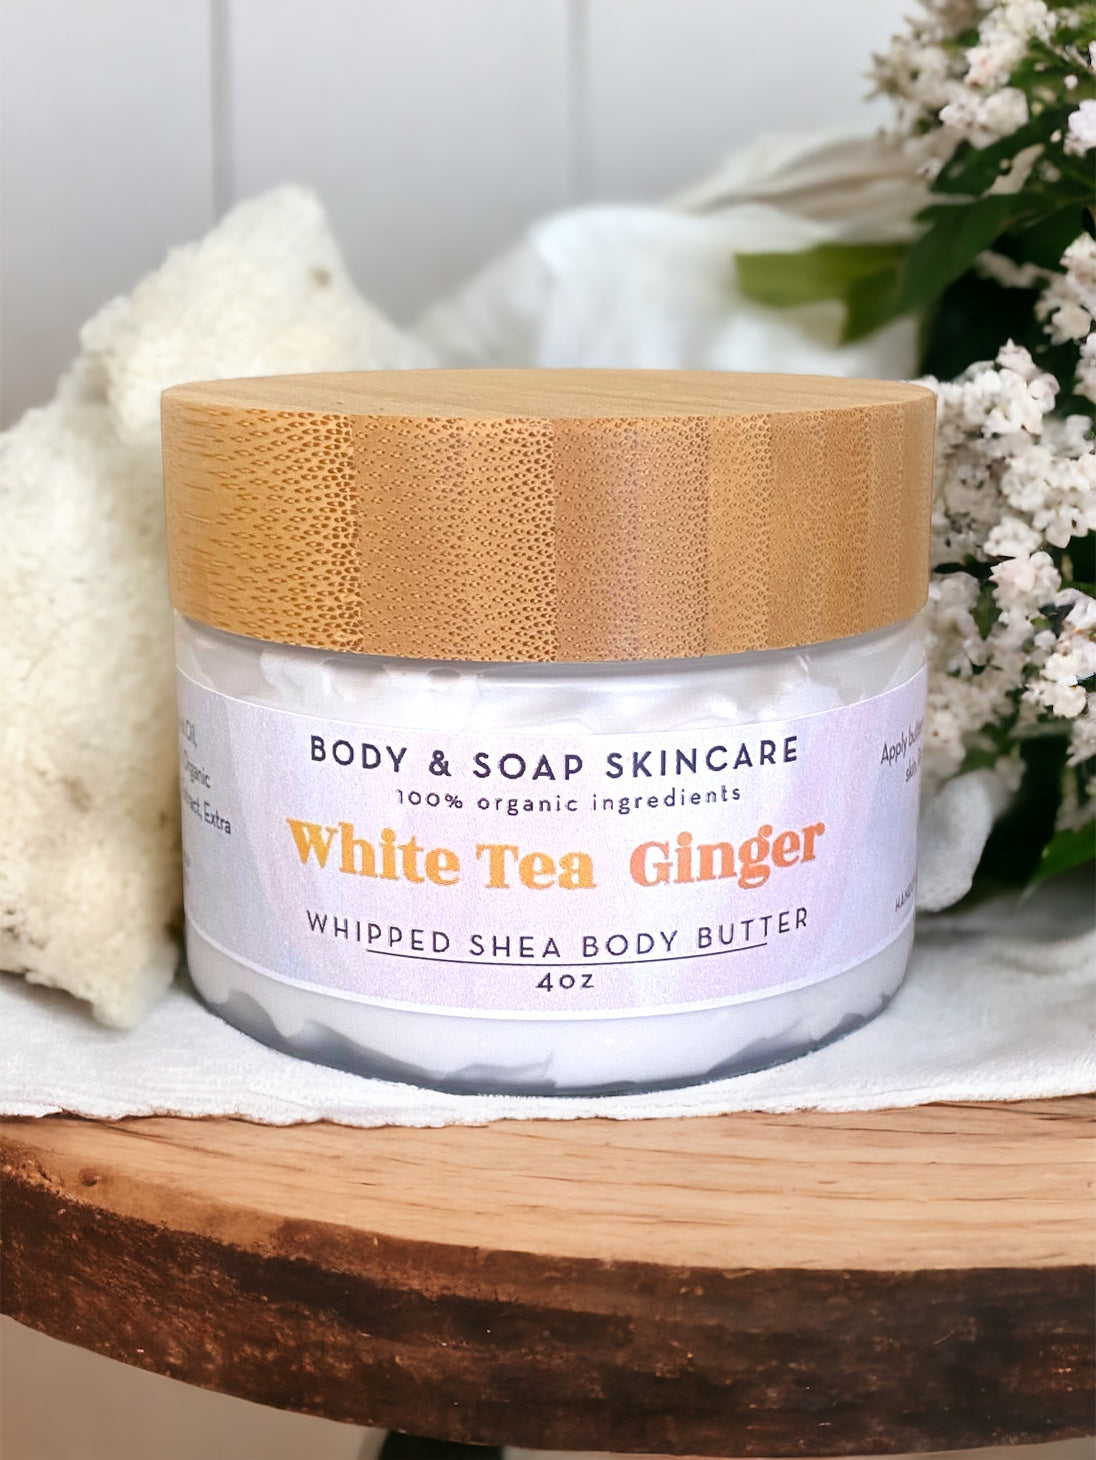 Whipped Shea Body Butter: White Tea Ginger - Body & Soap Skincare